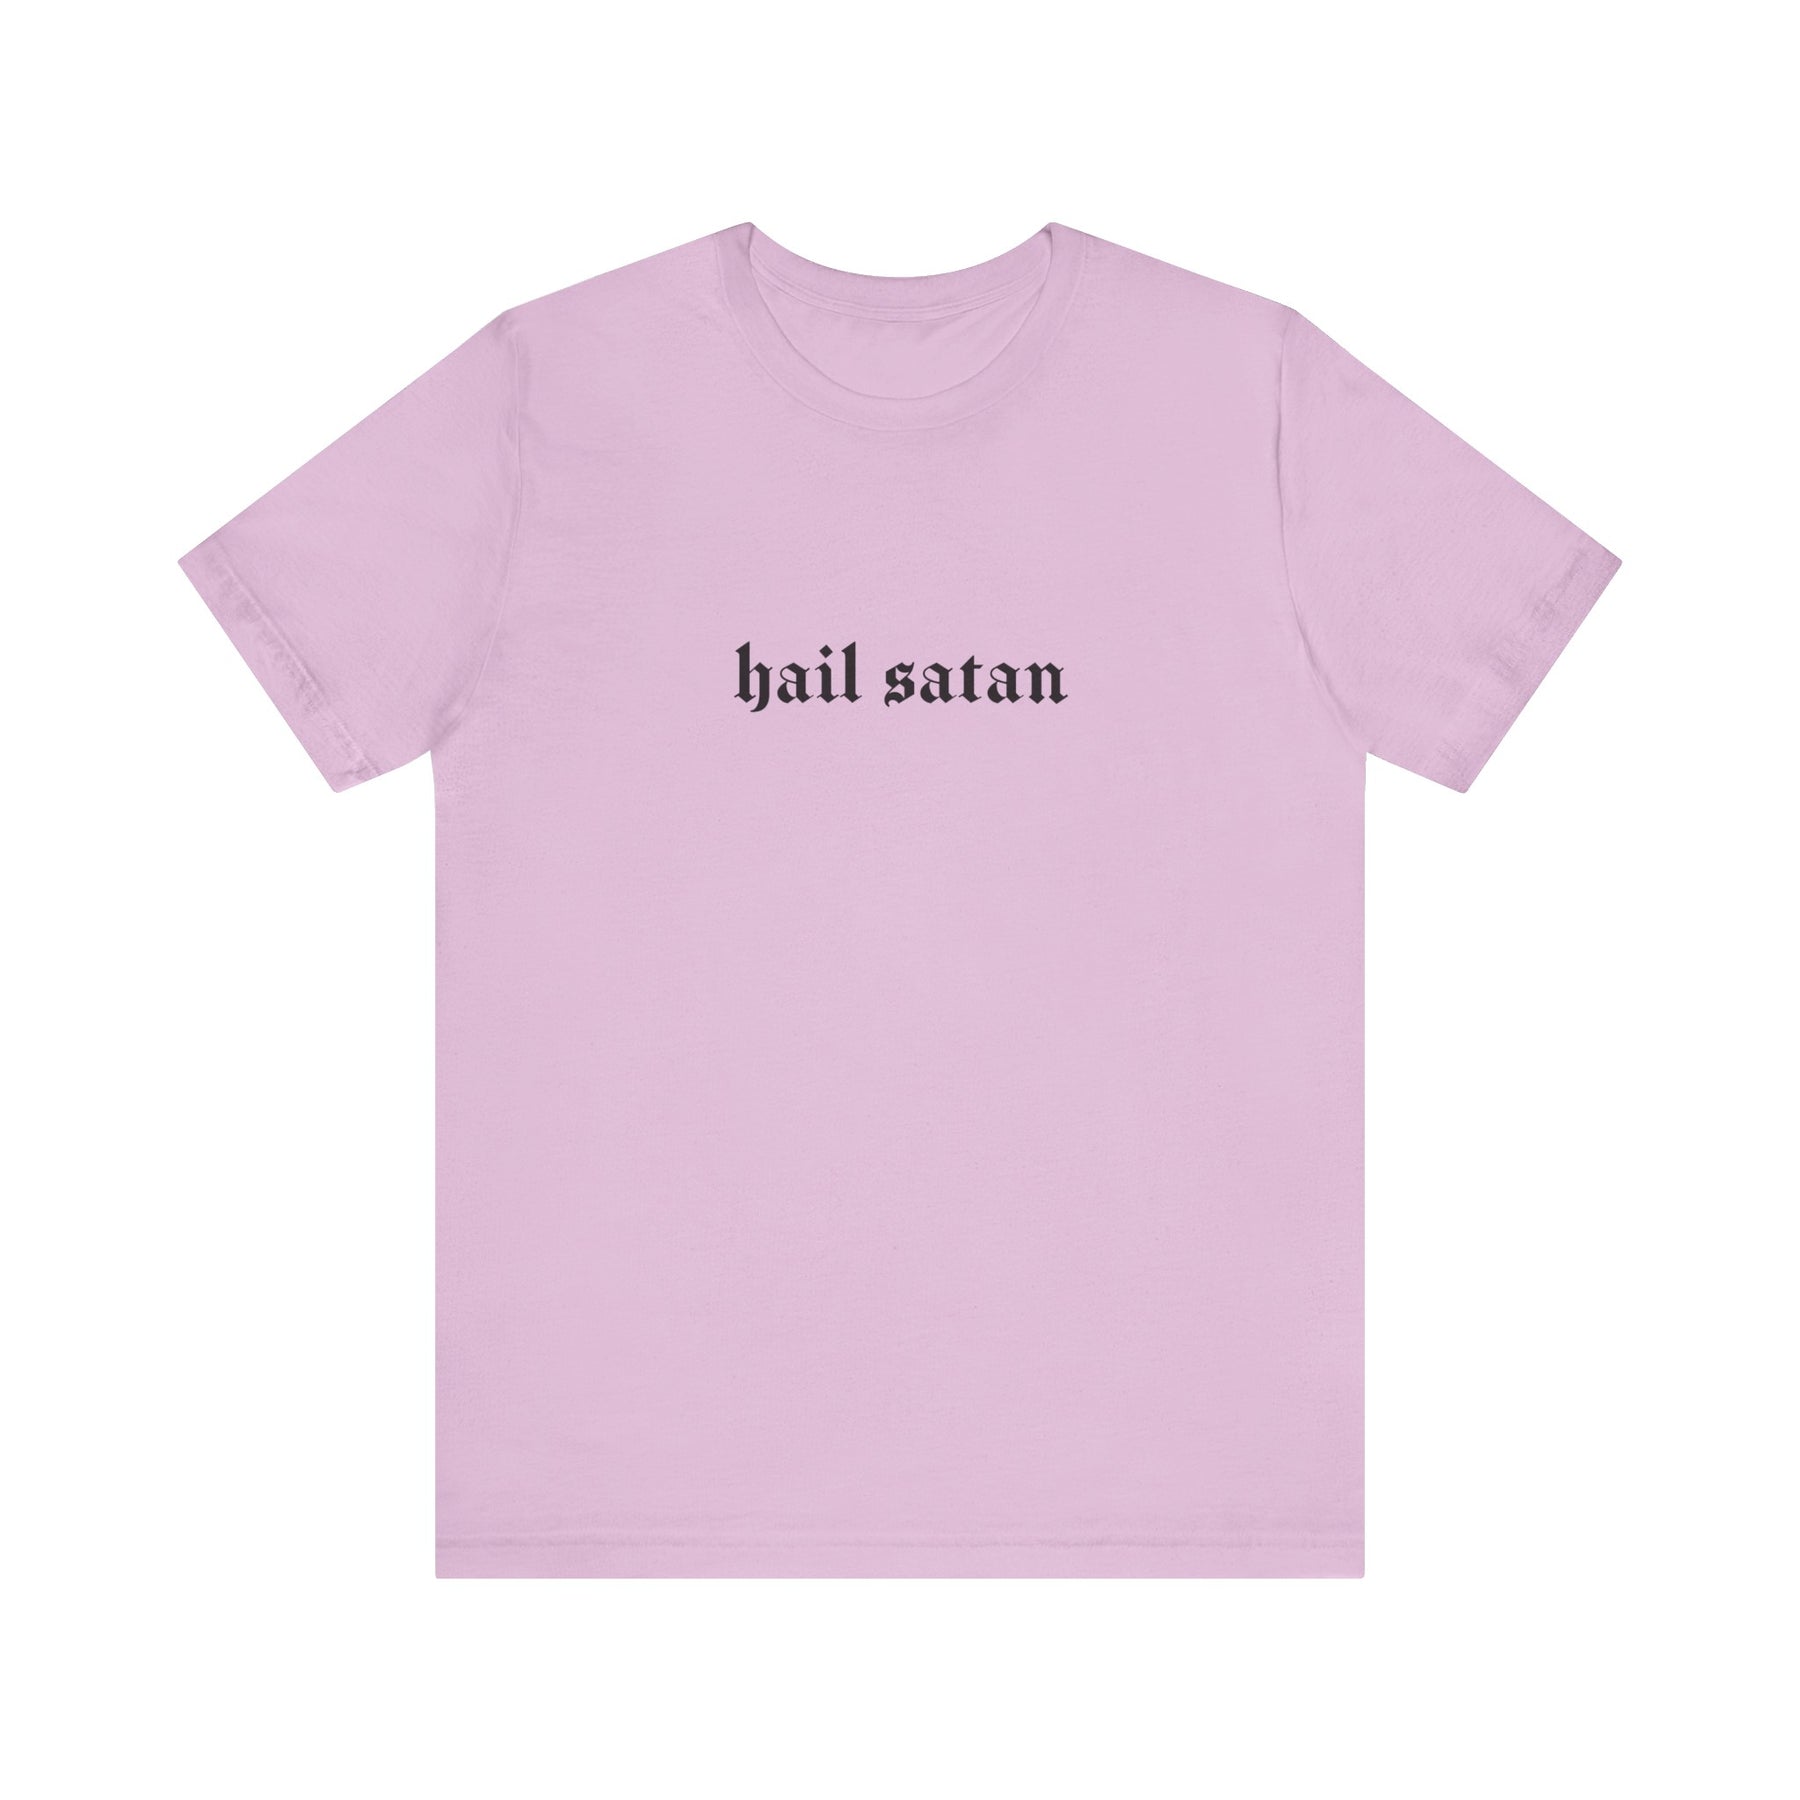 Hail Satan Gothic T - Shirt - Goth Cloth Co.T - Shirt32489265064523856990